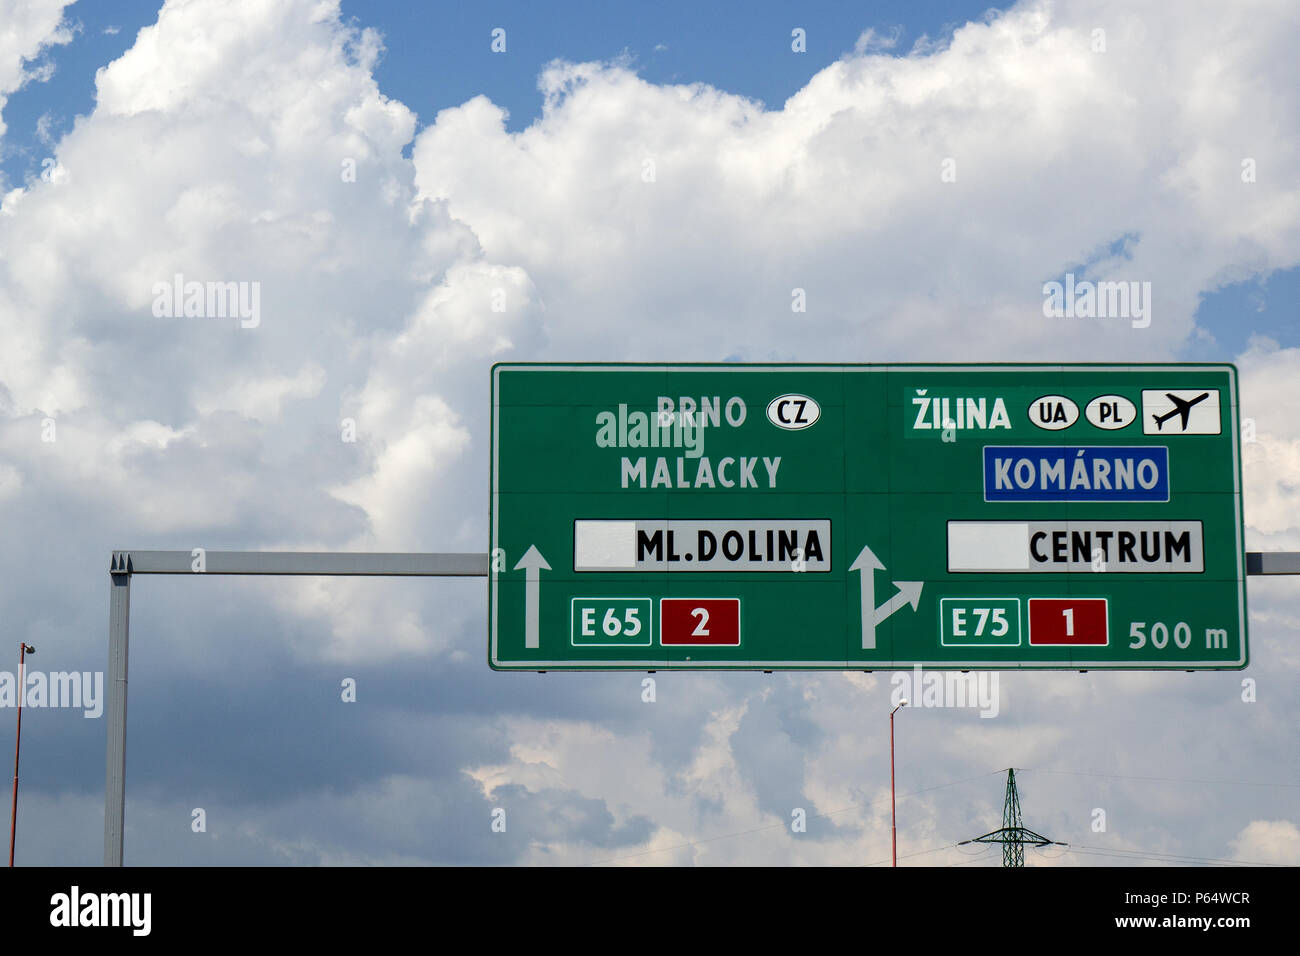 grünes Straßenschild auf der Autobahn in die Richtungen BRNO Malacky Dolina Tschechische Republik und Zilima, Komarno Centrum Ukraine und Polen. Stock Photo